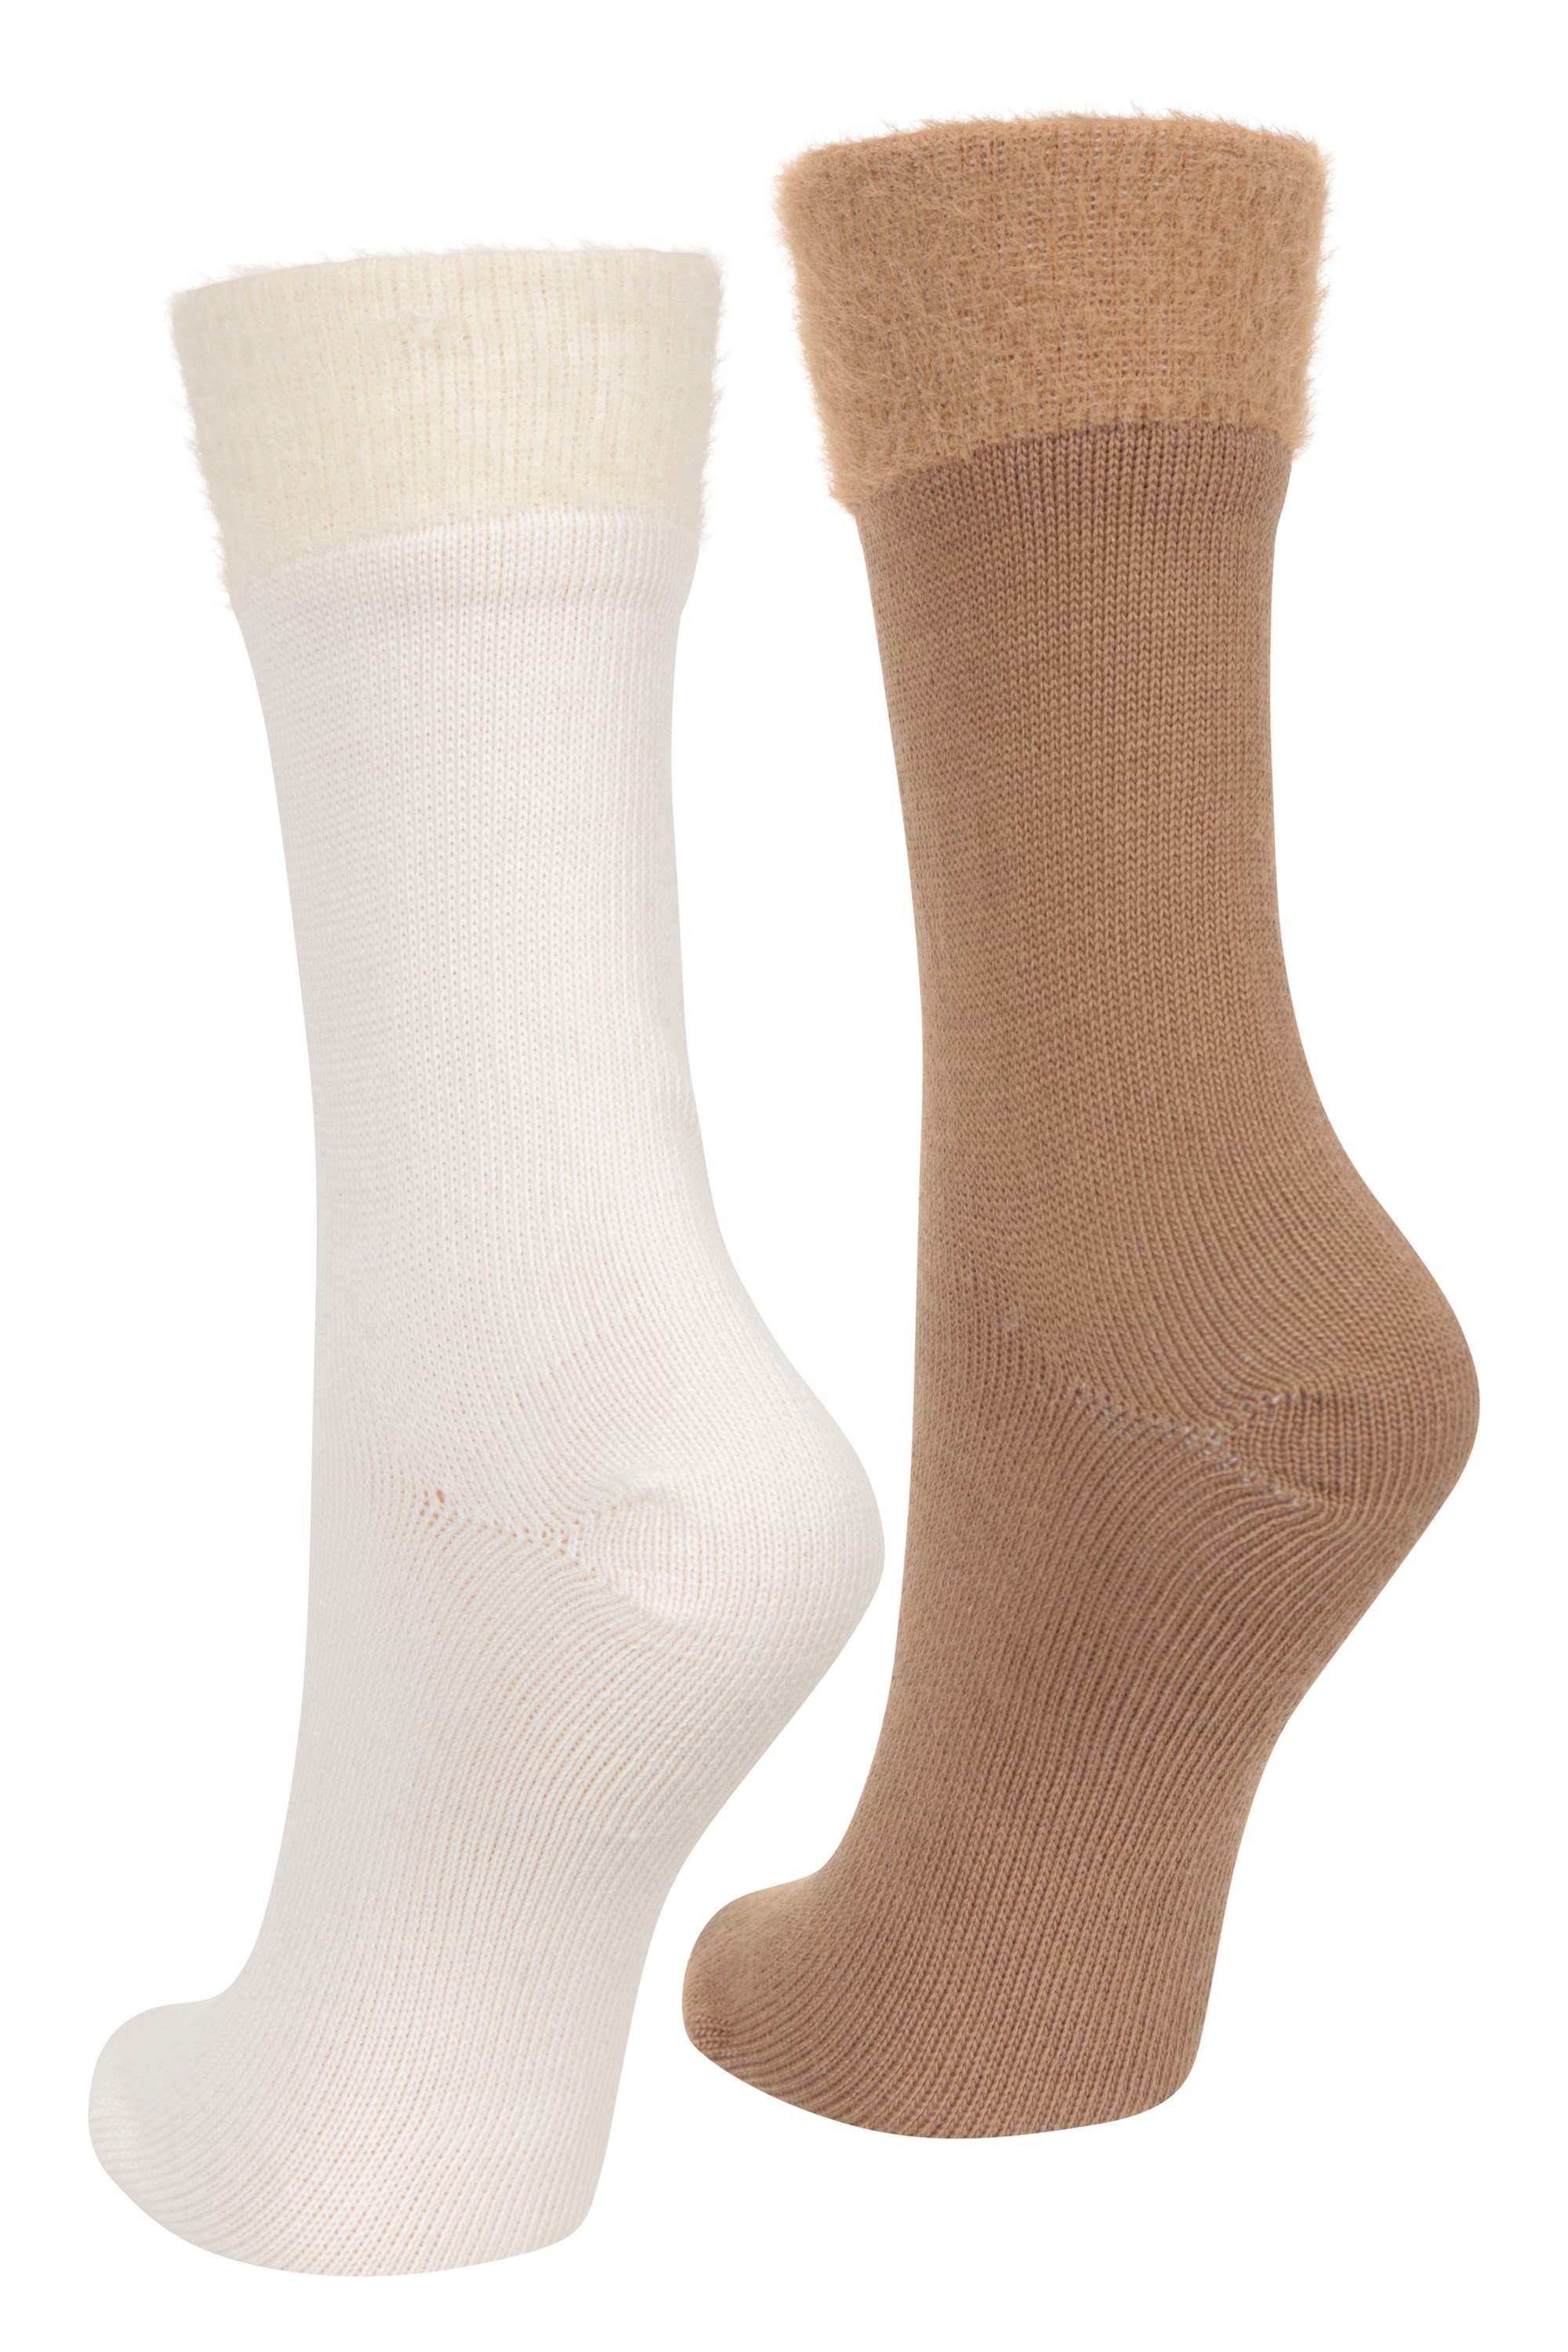 Womens Fluffy Socks 2-Pack